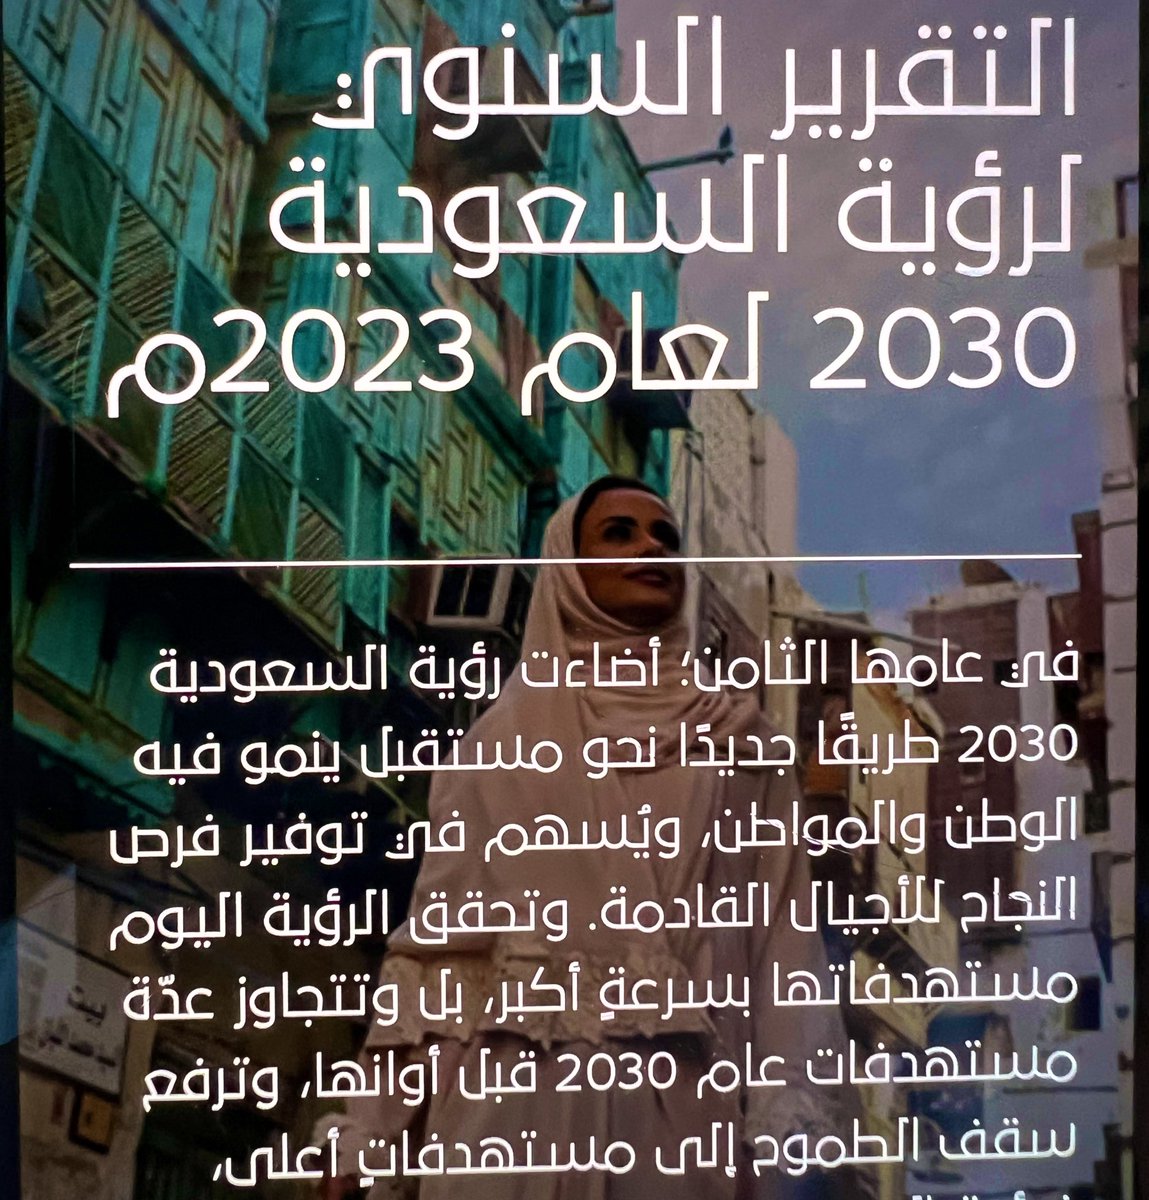 رؤية 2030 
حققناها نحن #السعودية قيادة وشعباً، مؤسسات وأفرادا، شاركنا فيها رجالاً ونساء، 
كباراً واطفال، مواطن ومقيم. 
شكرا قيادتنا
شكرا وطنا
الارقام تتحدث في التقرير السنوي لرؤية السعودية #رؤية_السعودية_2030 
دام عزك ياوطن 🇸🇦